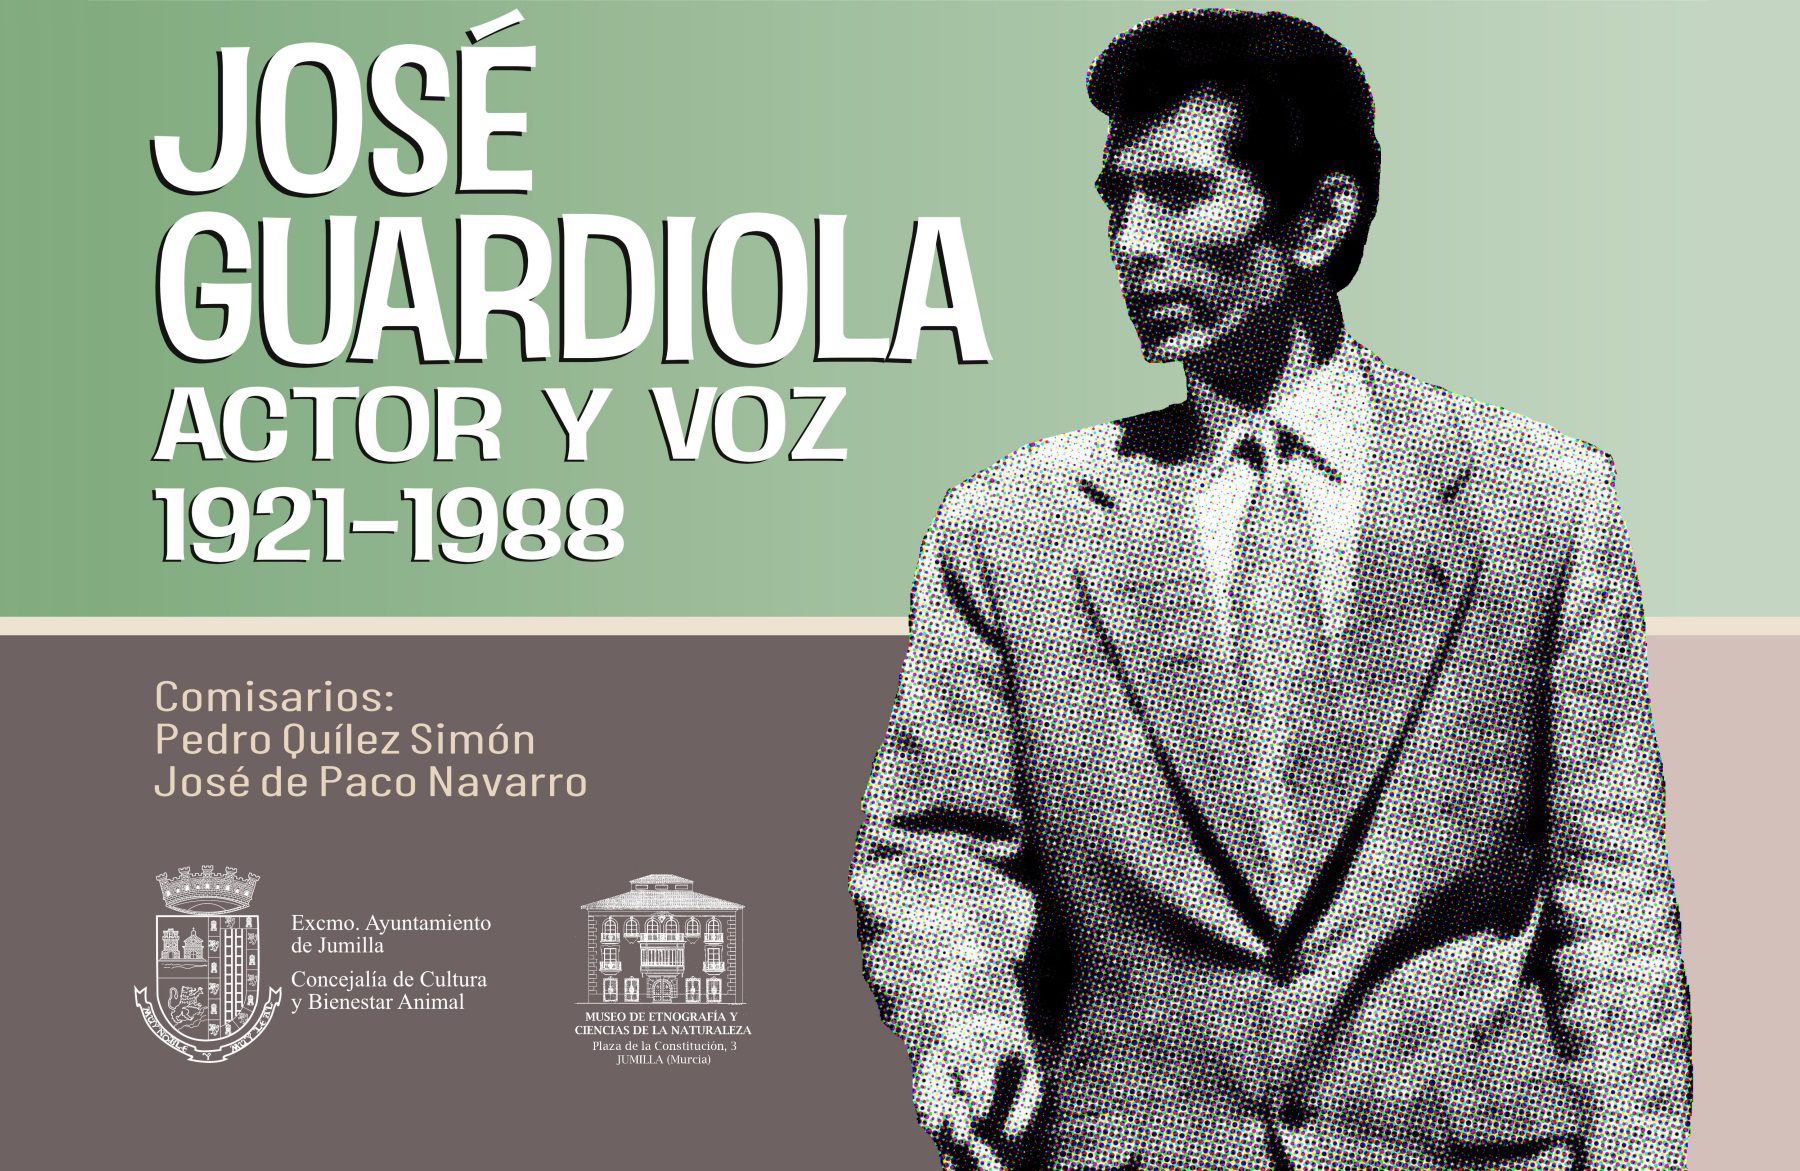 El Etnográfico prepara una exposición sobre el actor y la voz de José Guardiola